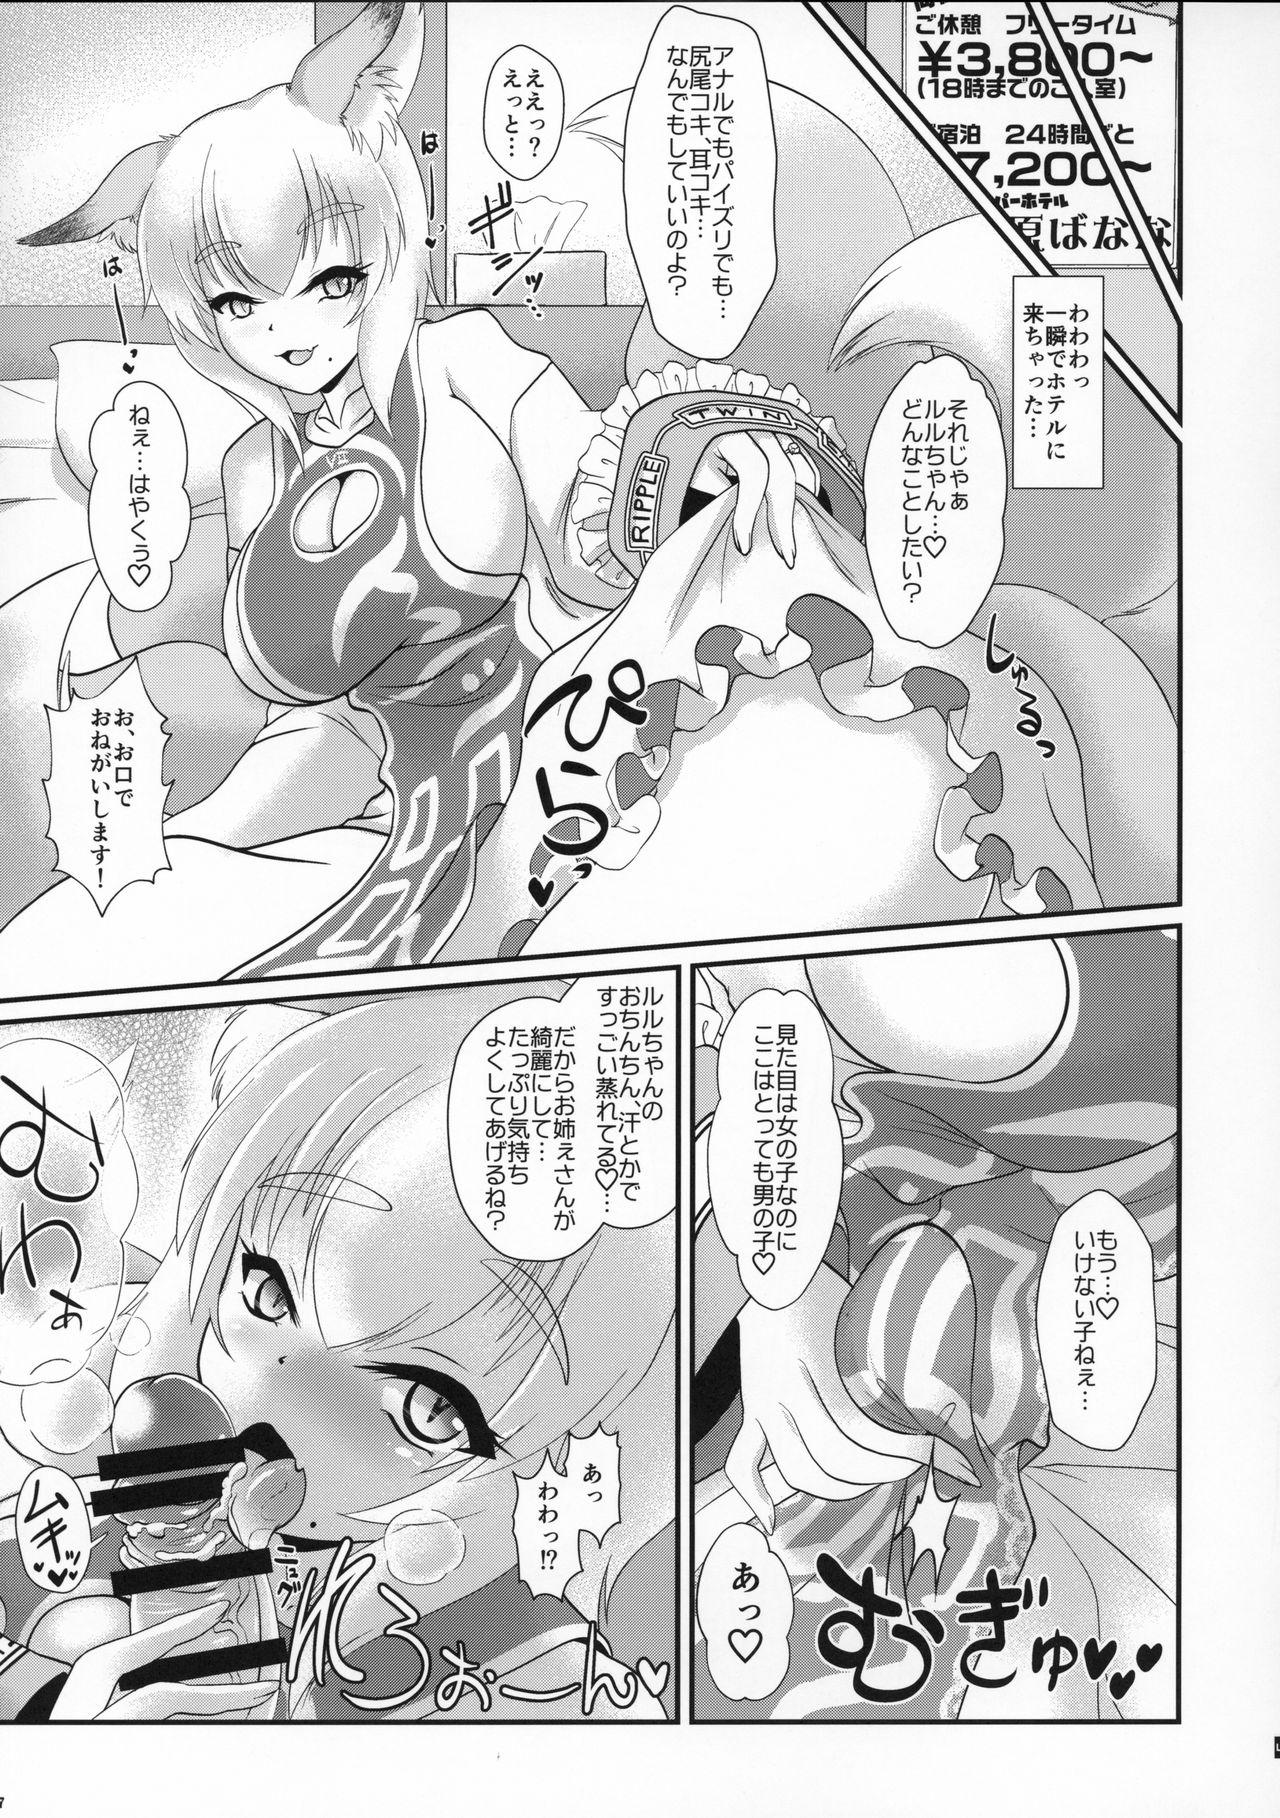 Gonzo Natsu no Touhou Manga Matsuri Great Yakumo Ran VS Ran-sama CJD - Touhou project Caught - Page 6